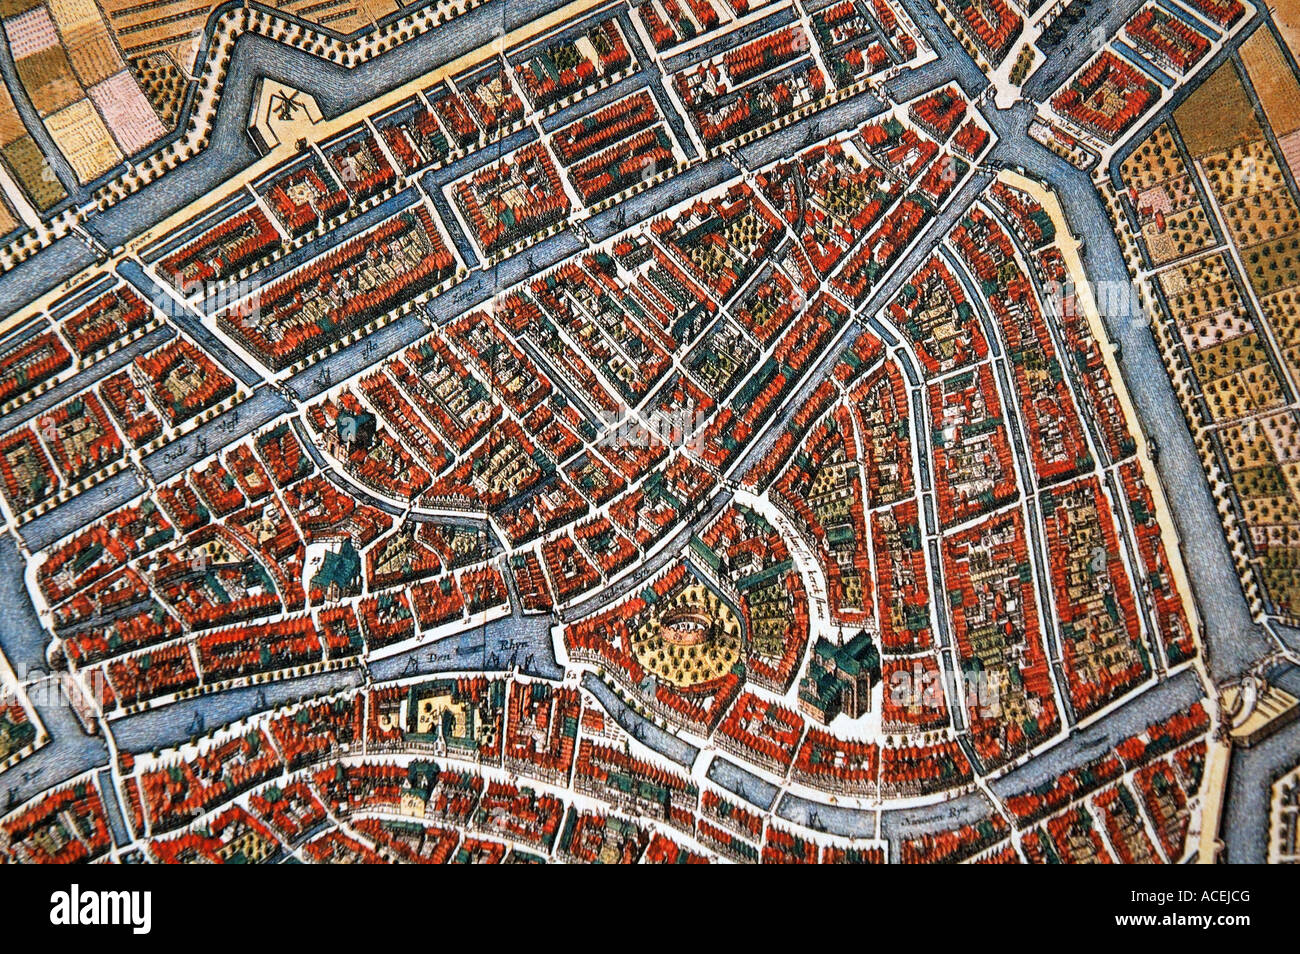 La carte médiévale de la vieille ville néerlandaise de Leyde Leyde datée 1649 montrant château central et de la cathédrale et de nombreux canaux Banque D'Images